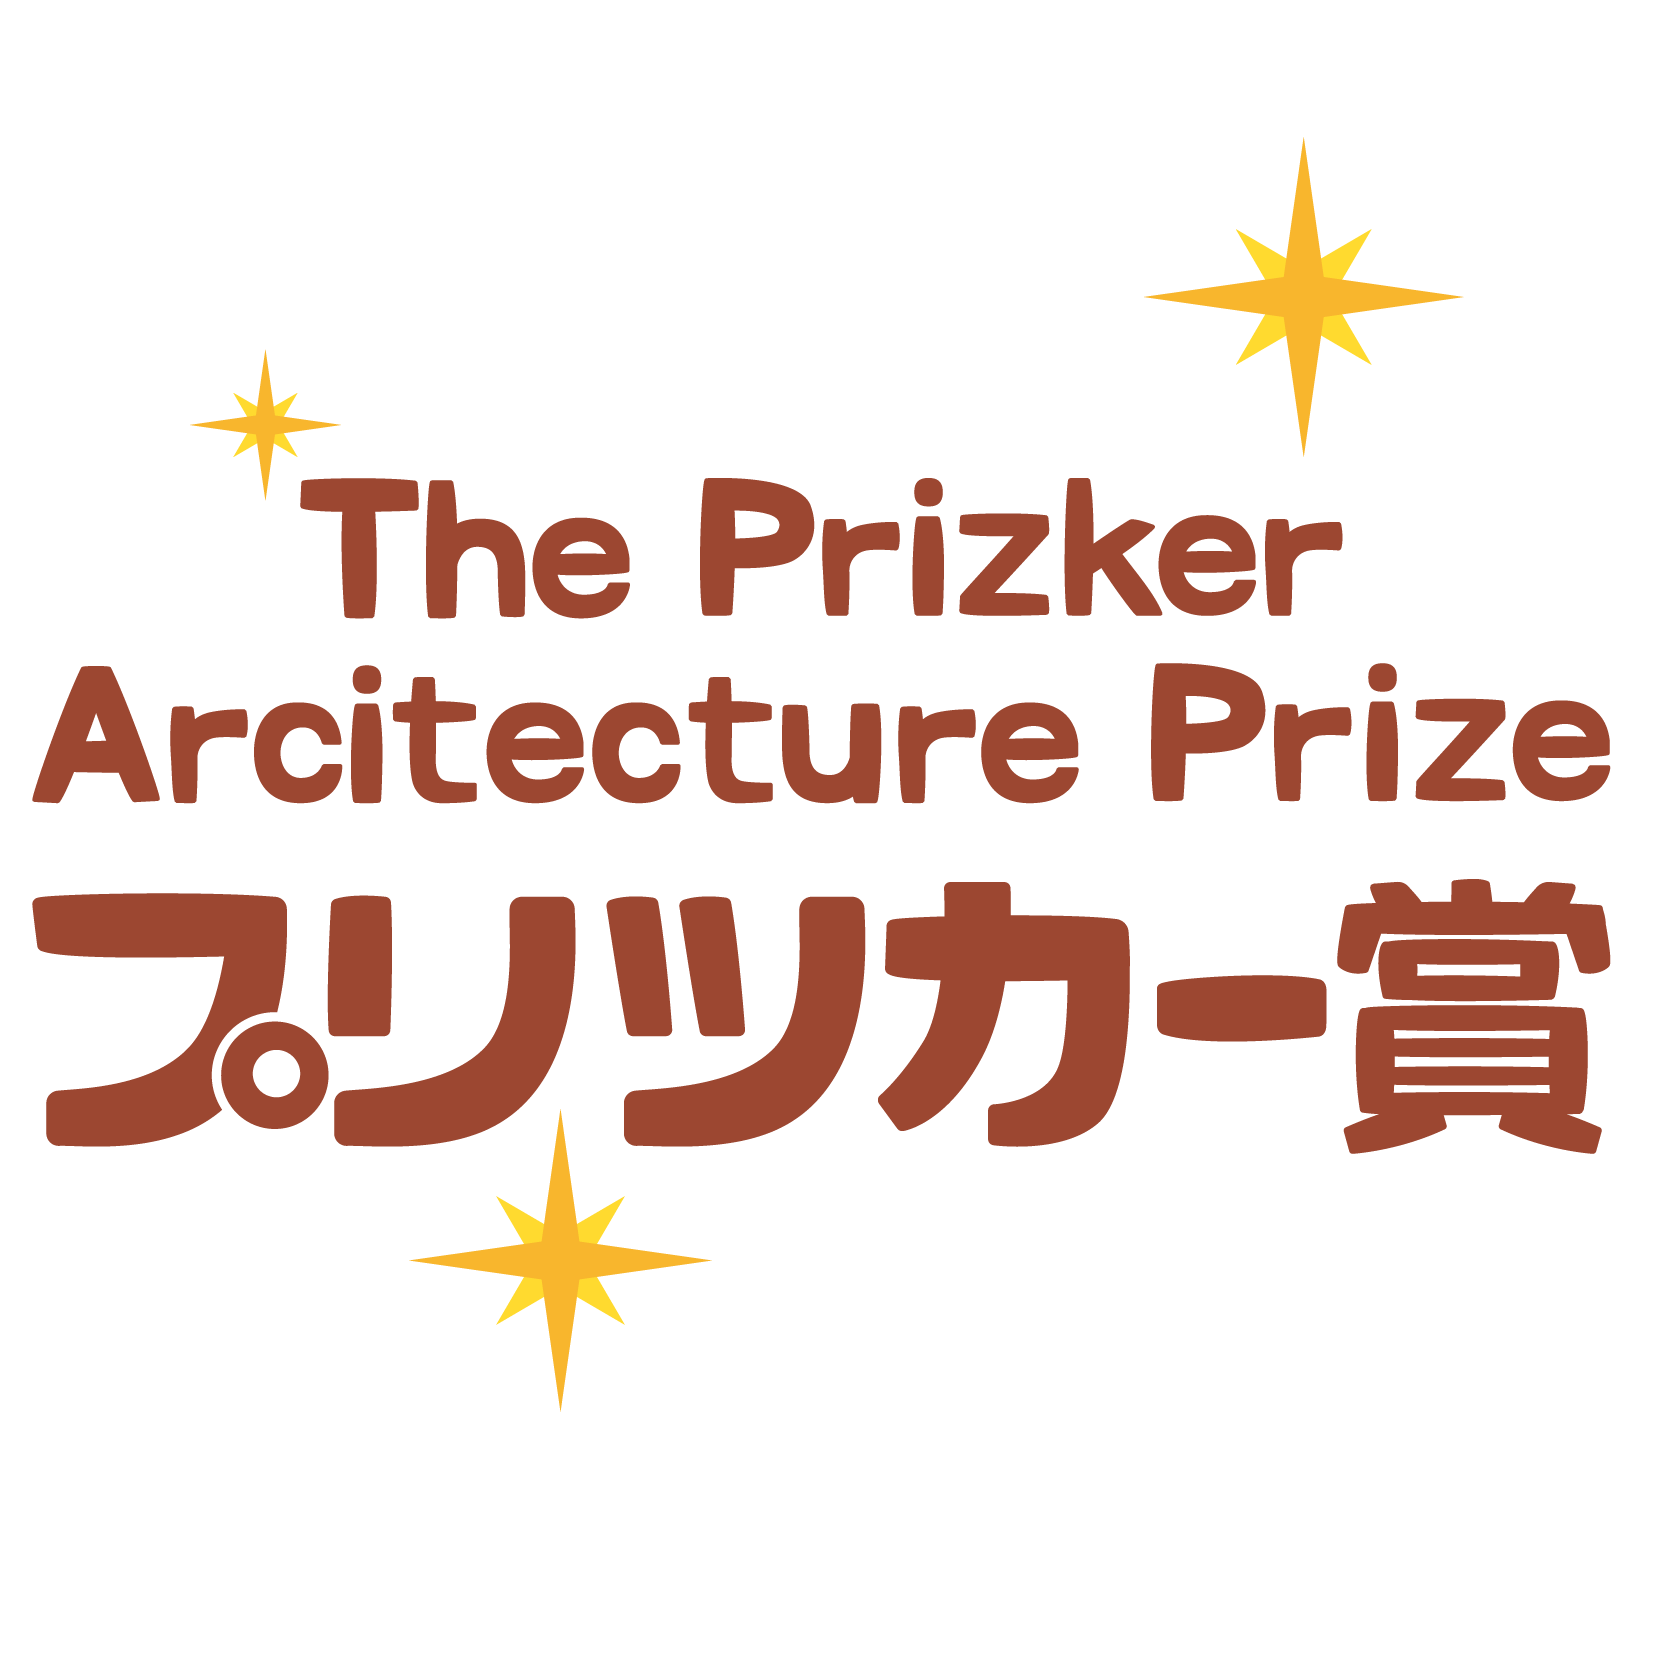 商用フリー無料イラスト_プリツカー賞文字The Pritzker Architecture Prize_007